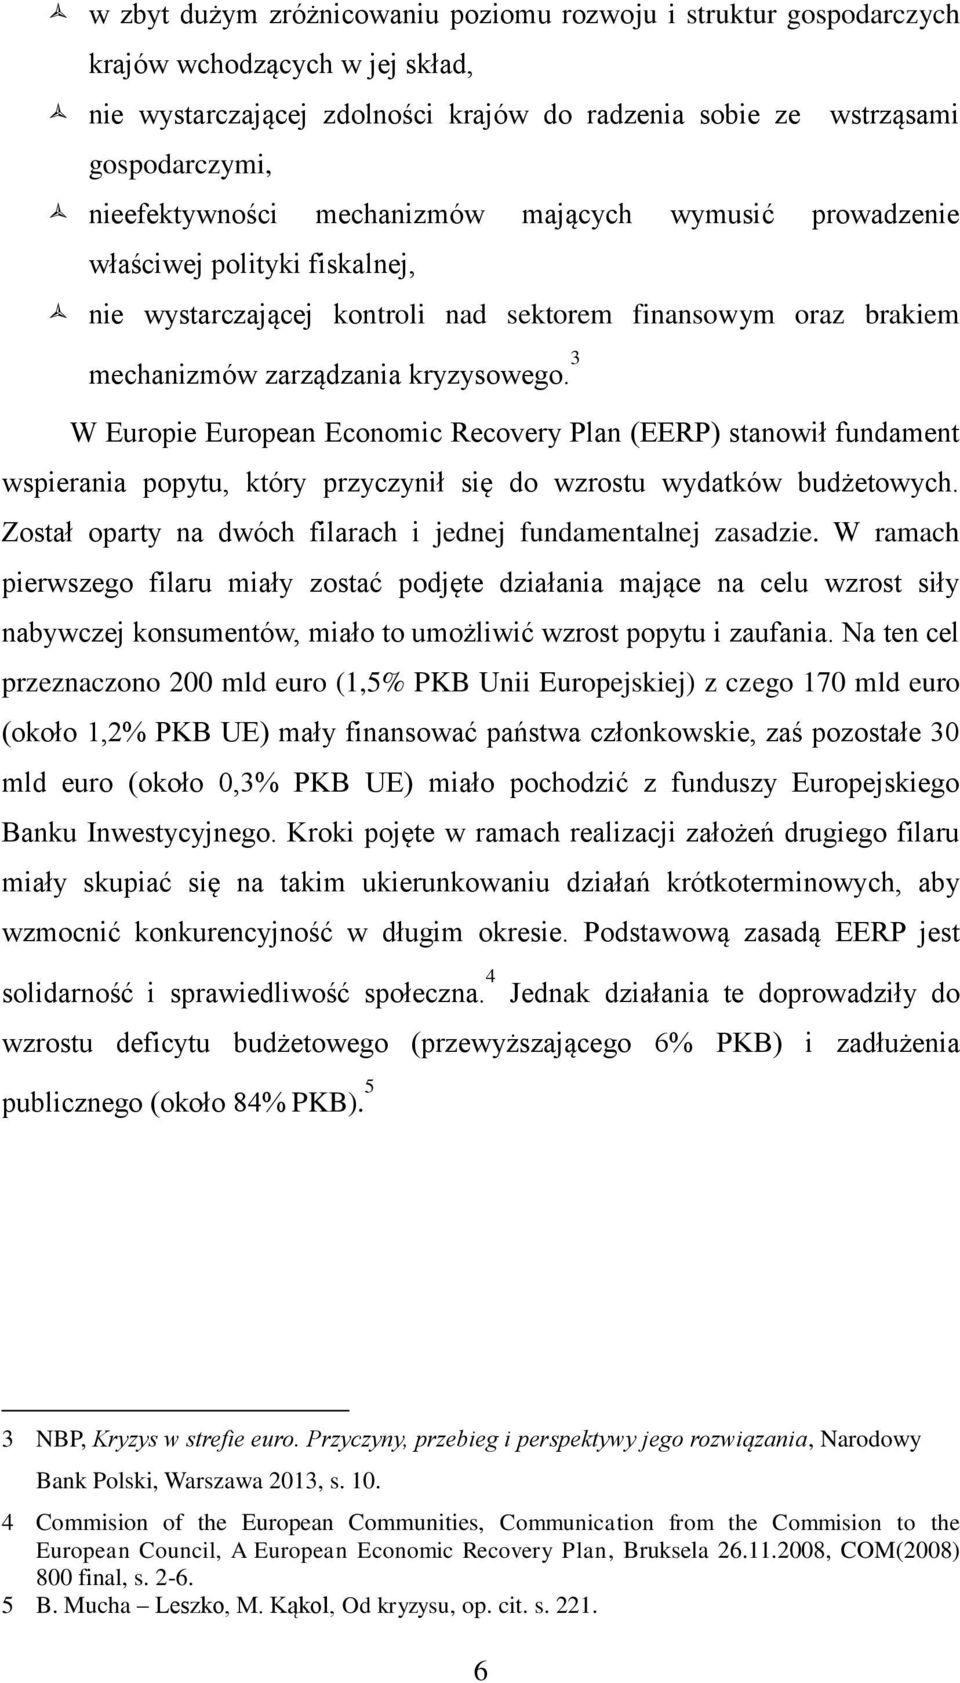 3 W Europie European Economic Recovery Plan (EERP) stanowił fundament wspierania popytu, który przyczynił się do wzrostu wydatków budżetowych.